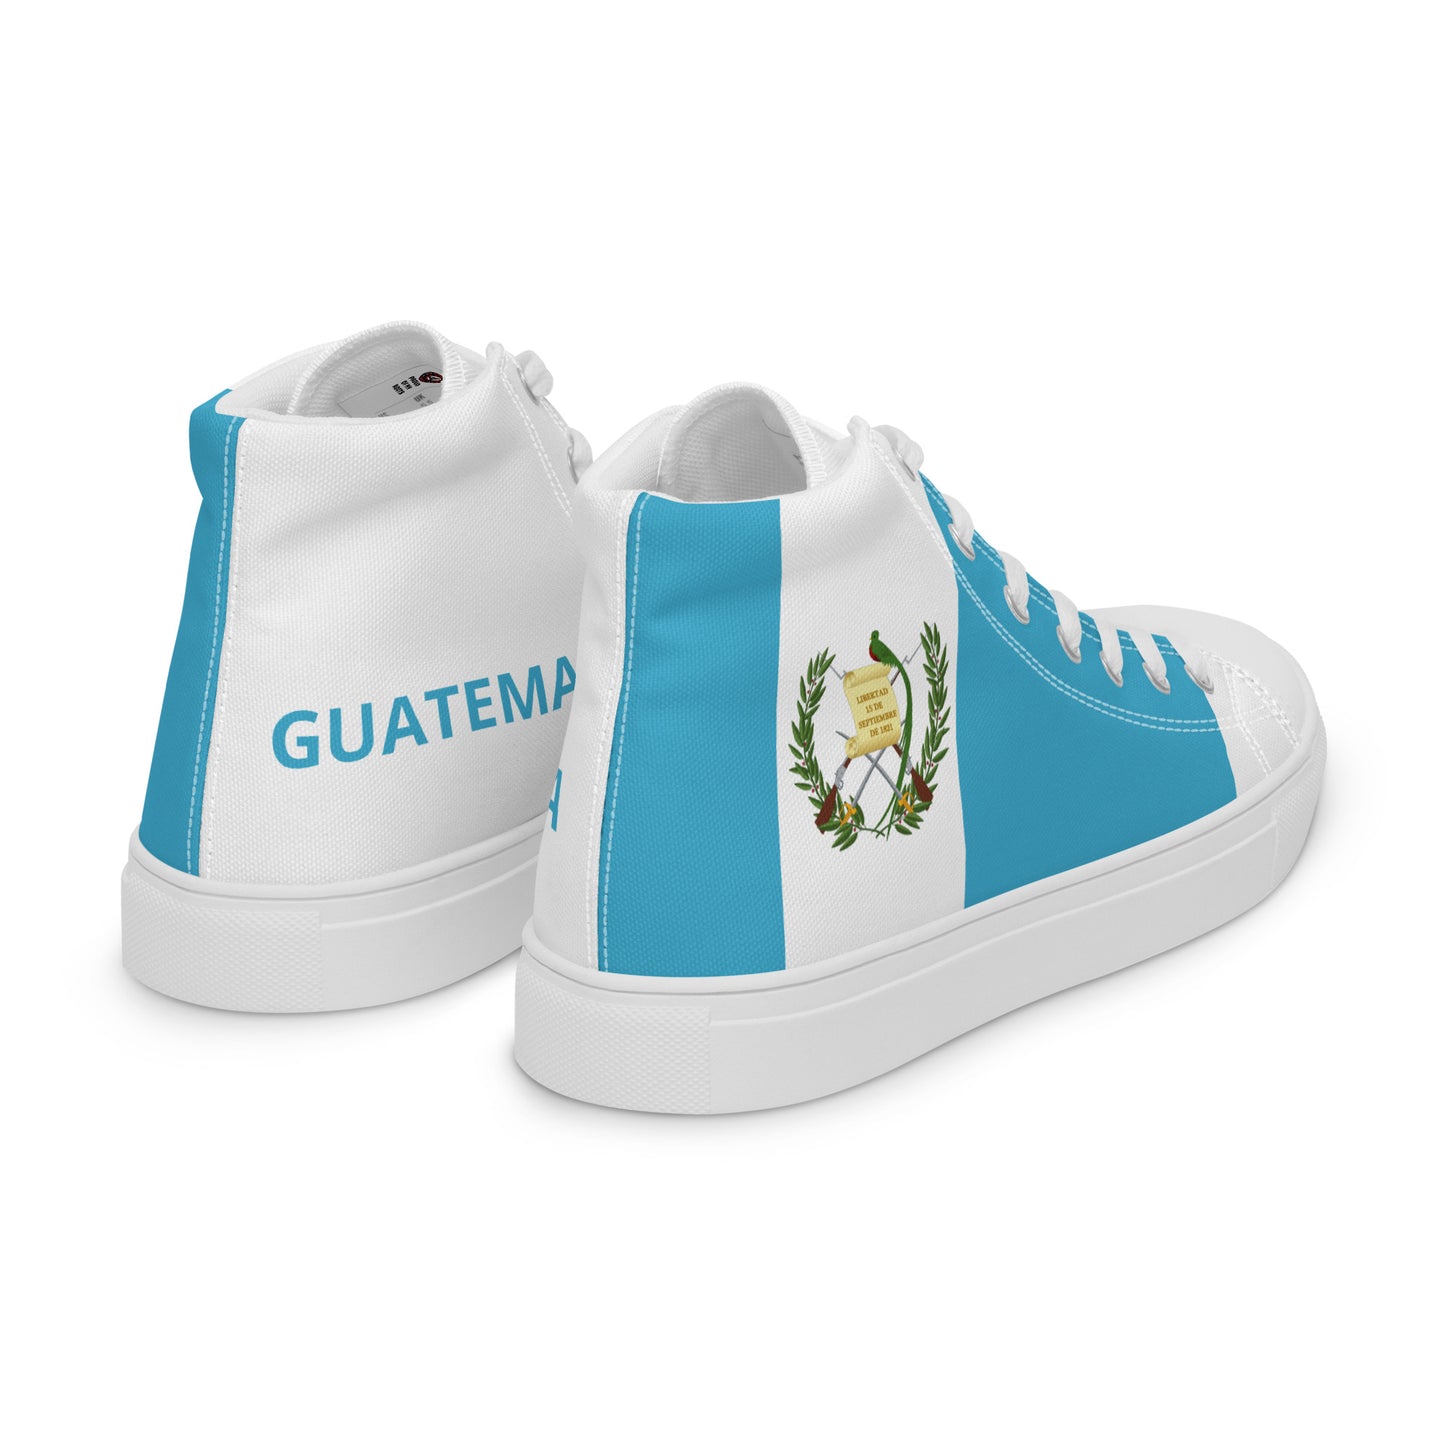 Guatemala - Women - Bandera - High top shoes